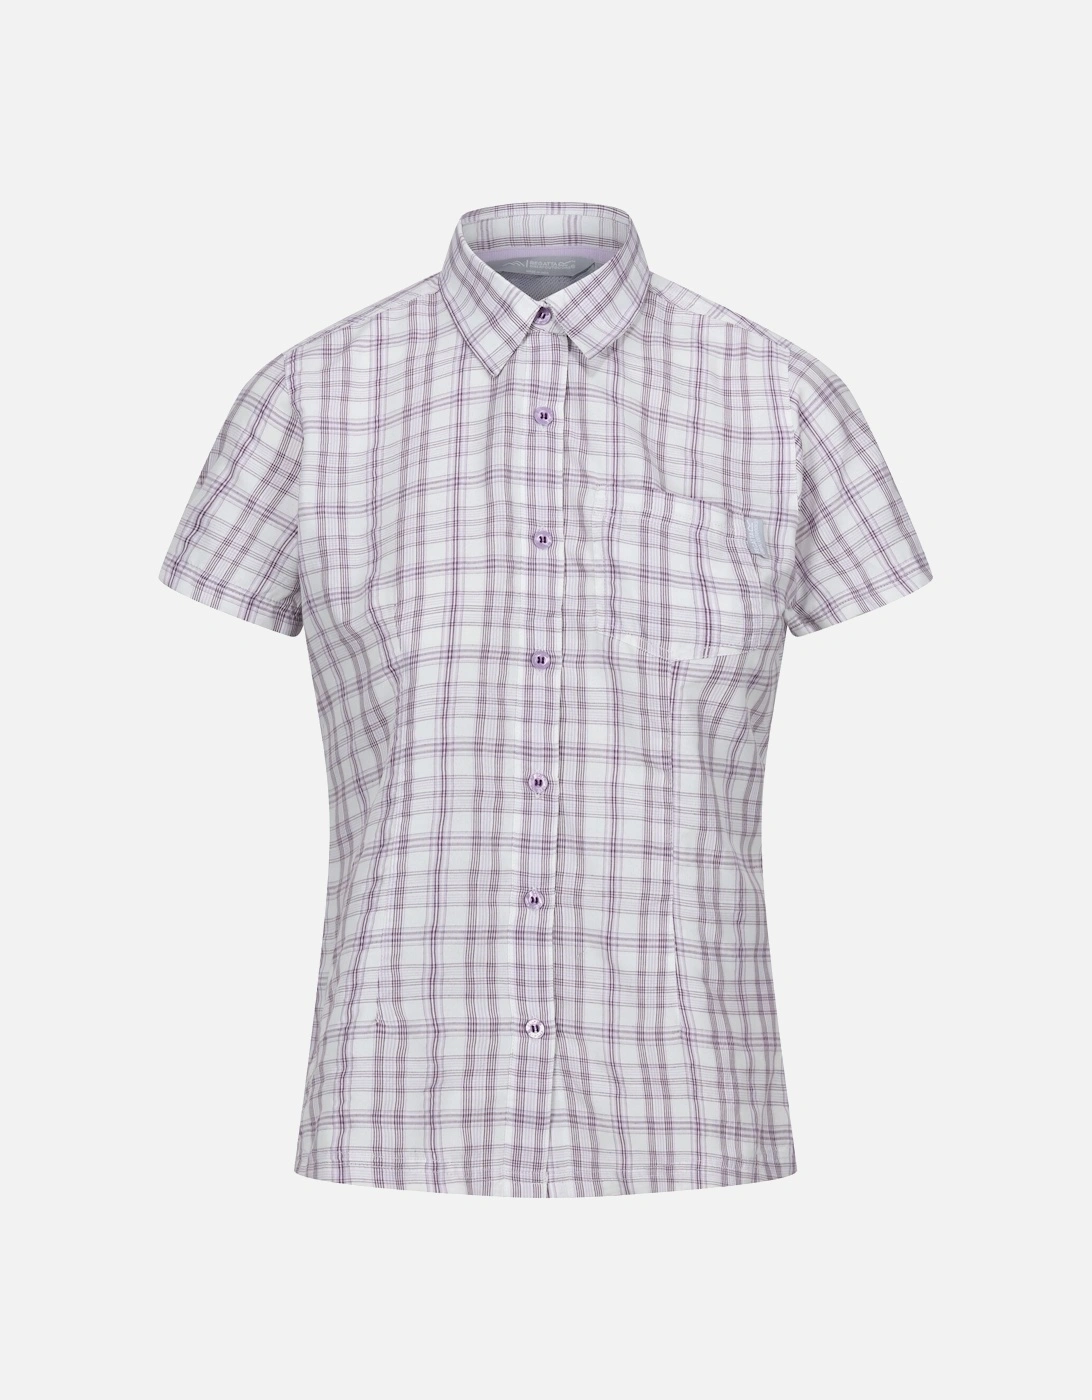 Womens/Ladies Mindano VIII Checked Short-Sleeved Shirt, 6 of 5